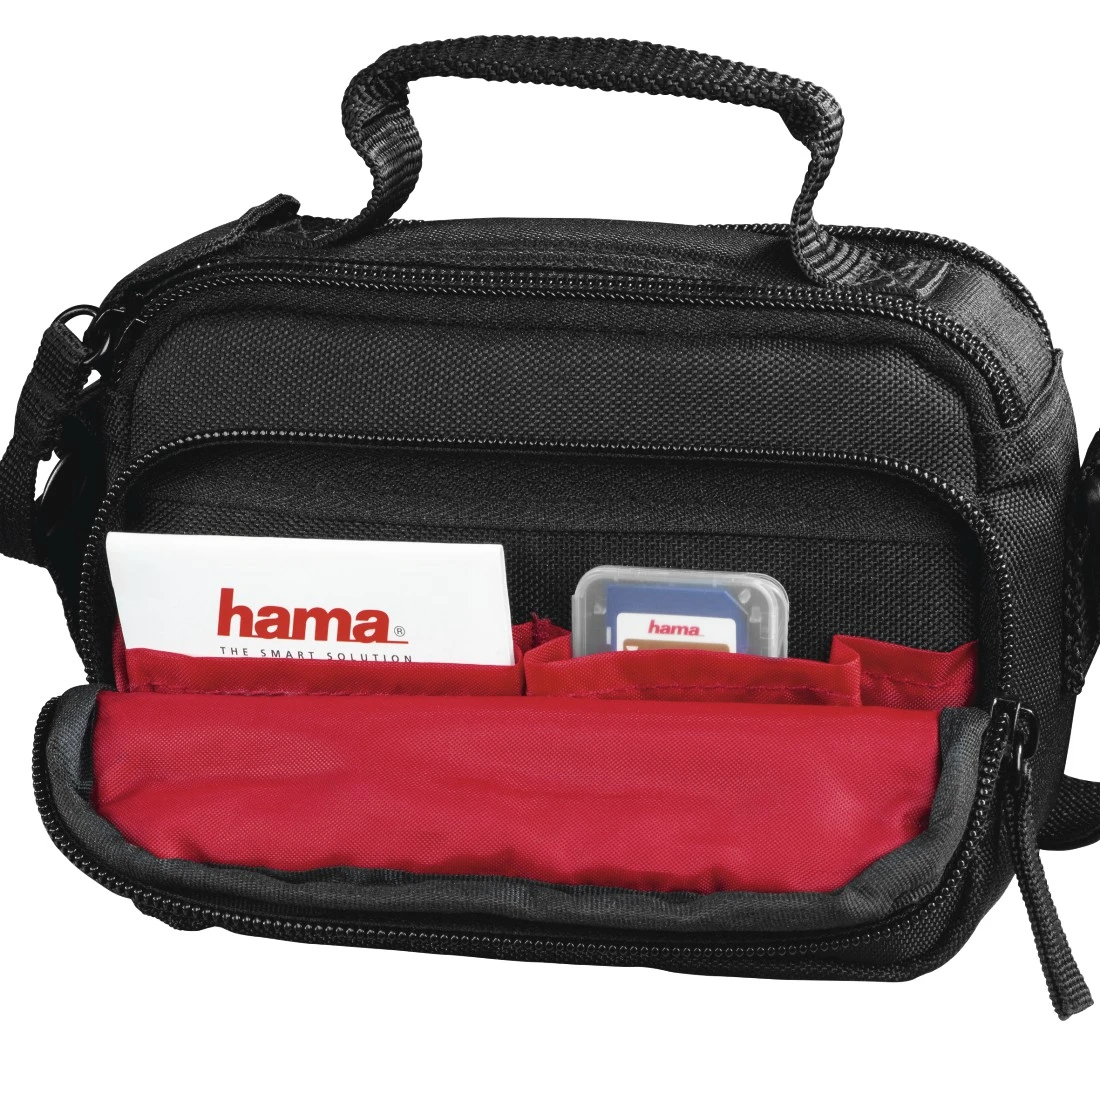 Hama 00185087 Samara Camera Bag, 140, black